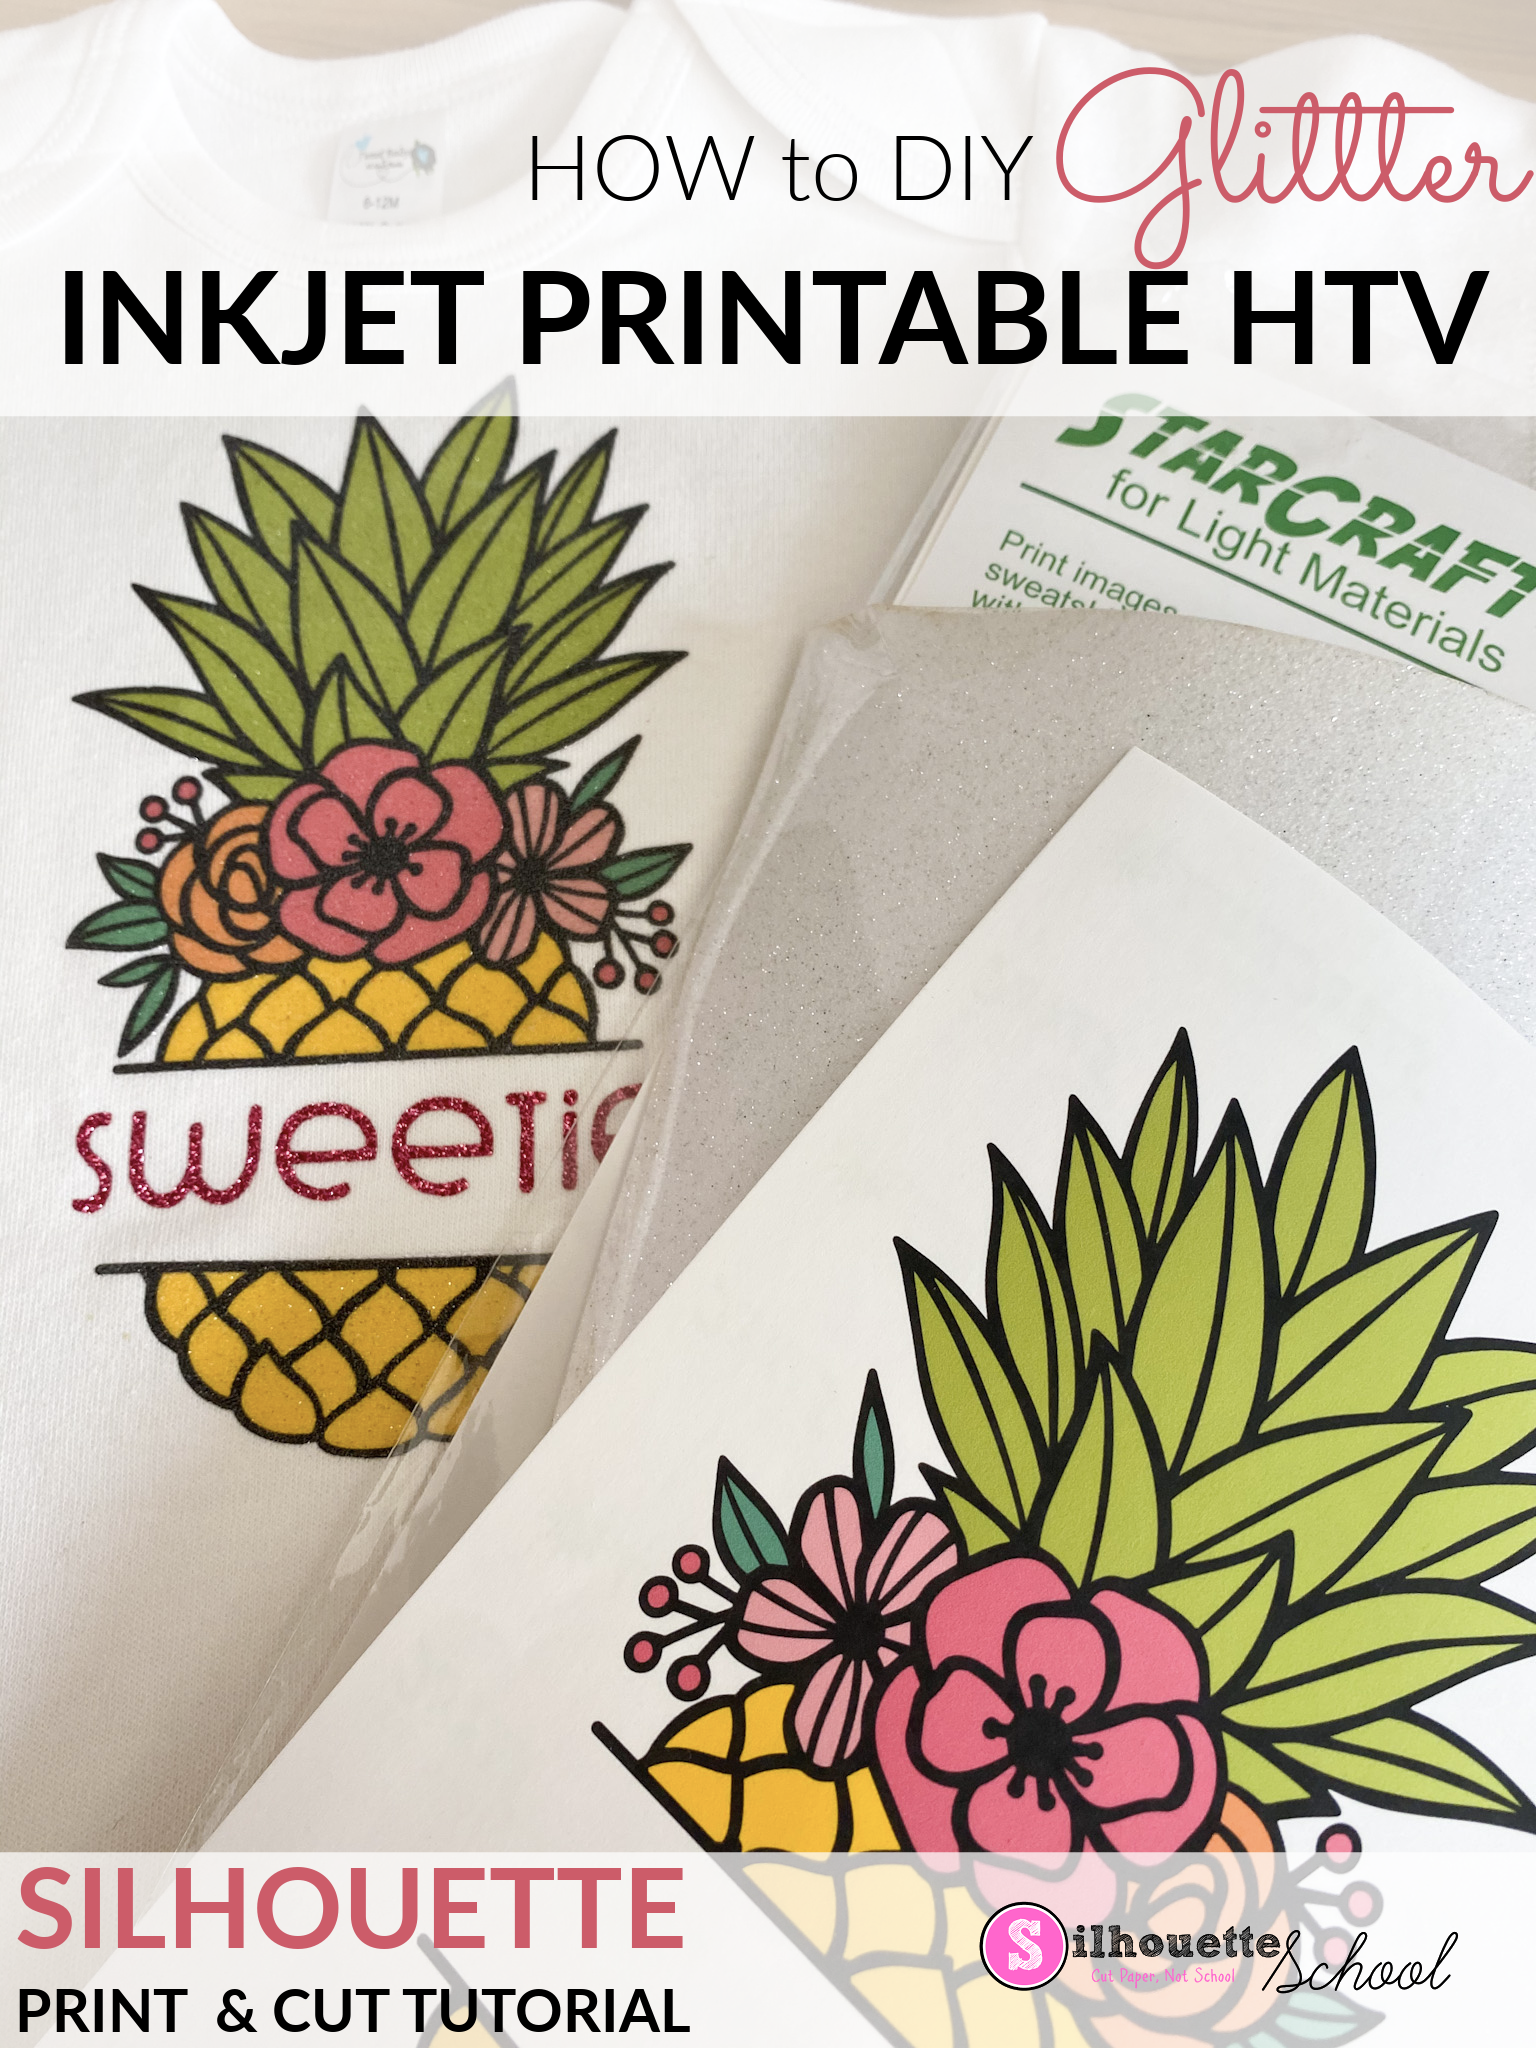 Inkjet Printable HTV on Glitter HTV: Silhouette Tutorial - Silhouette School